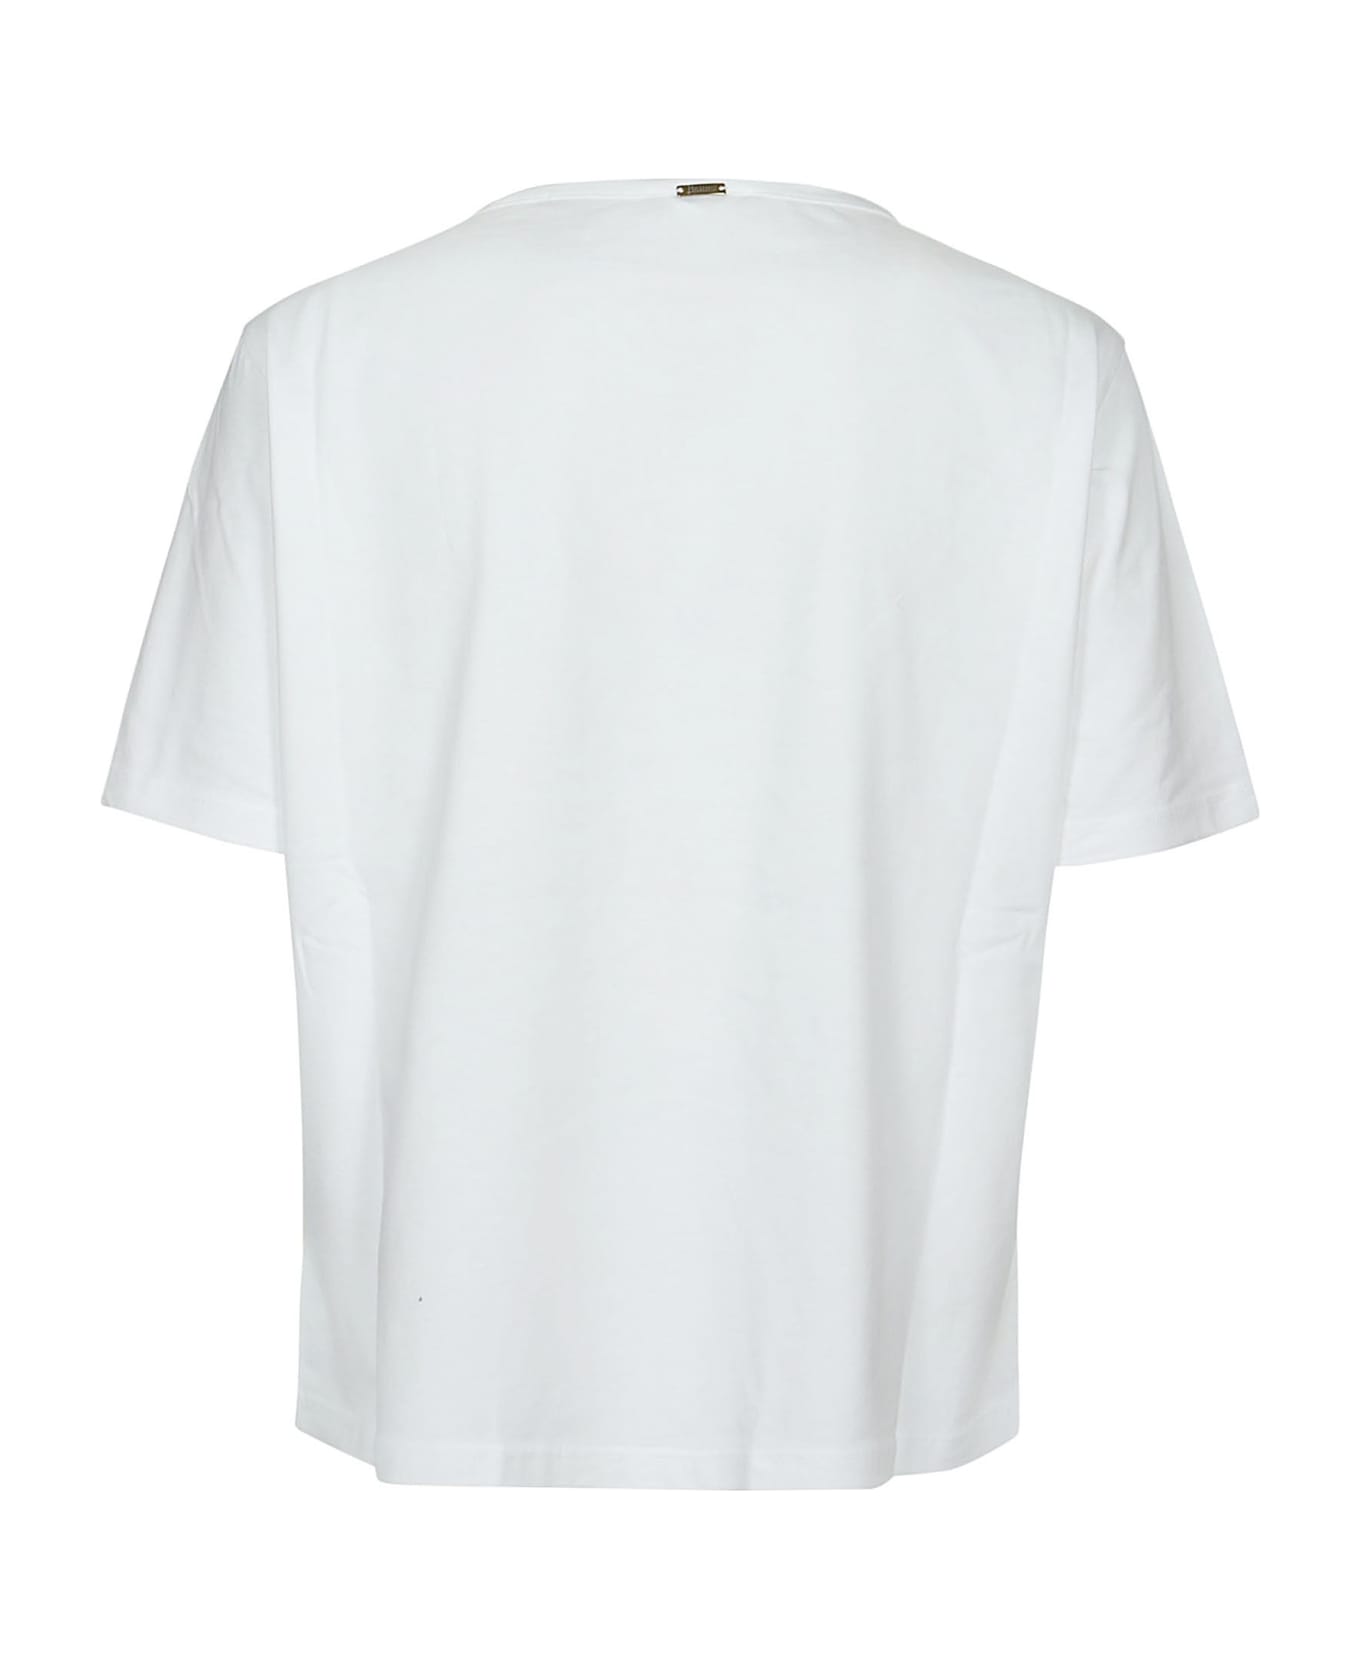 Herno T-shirt - Bianco